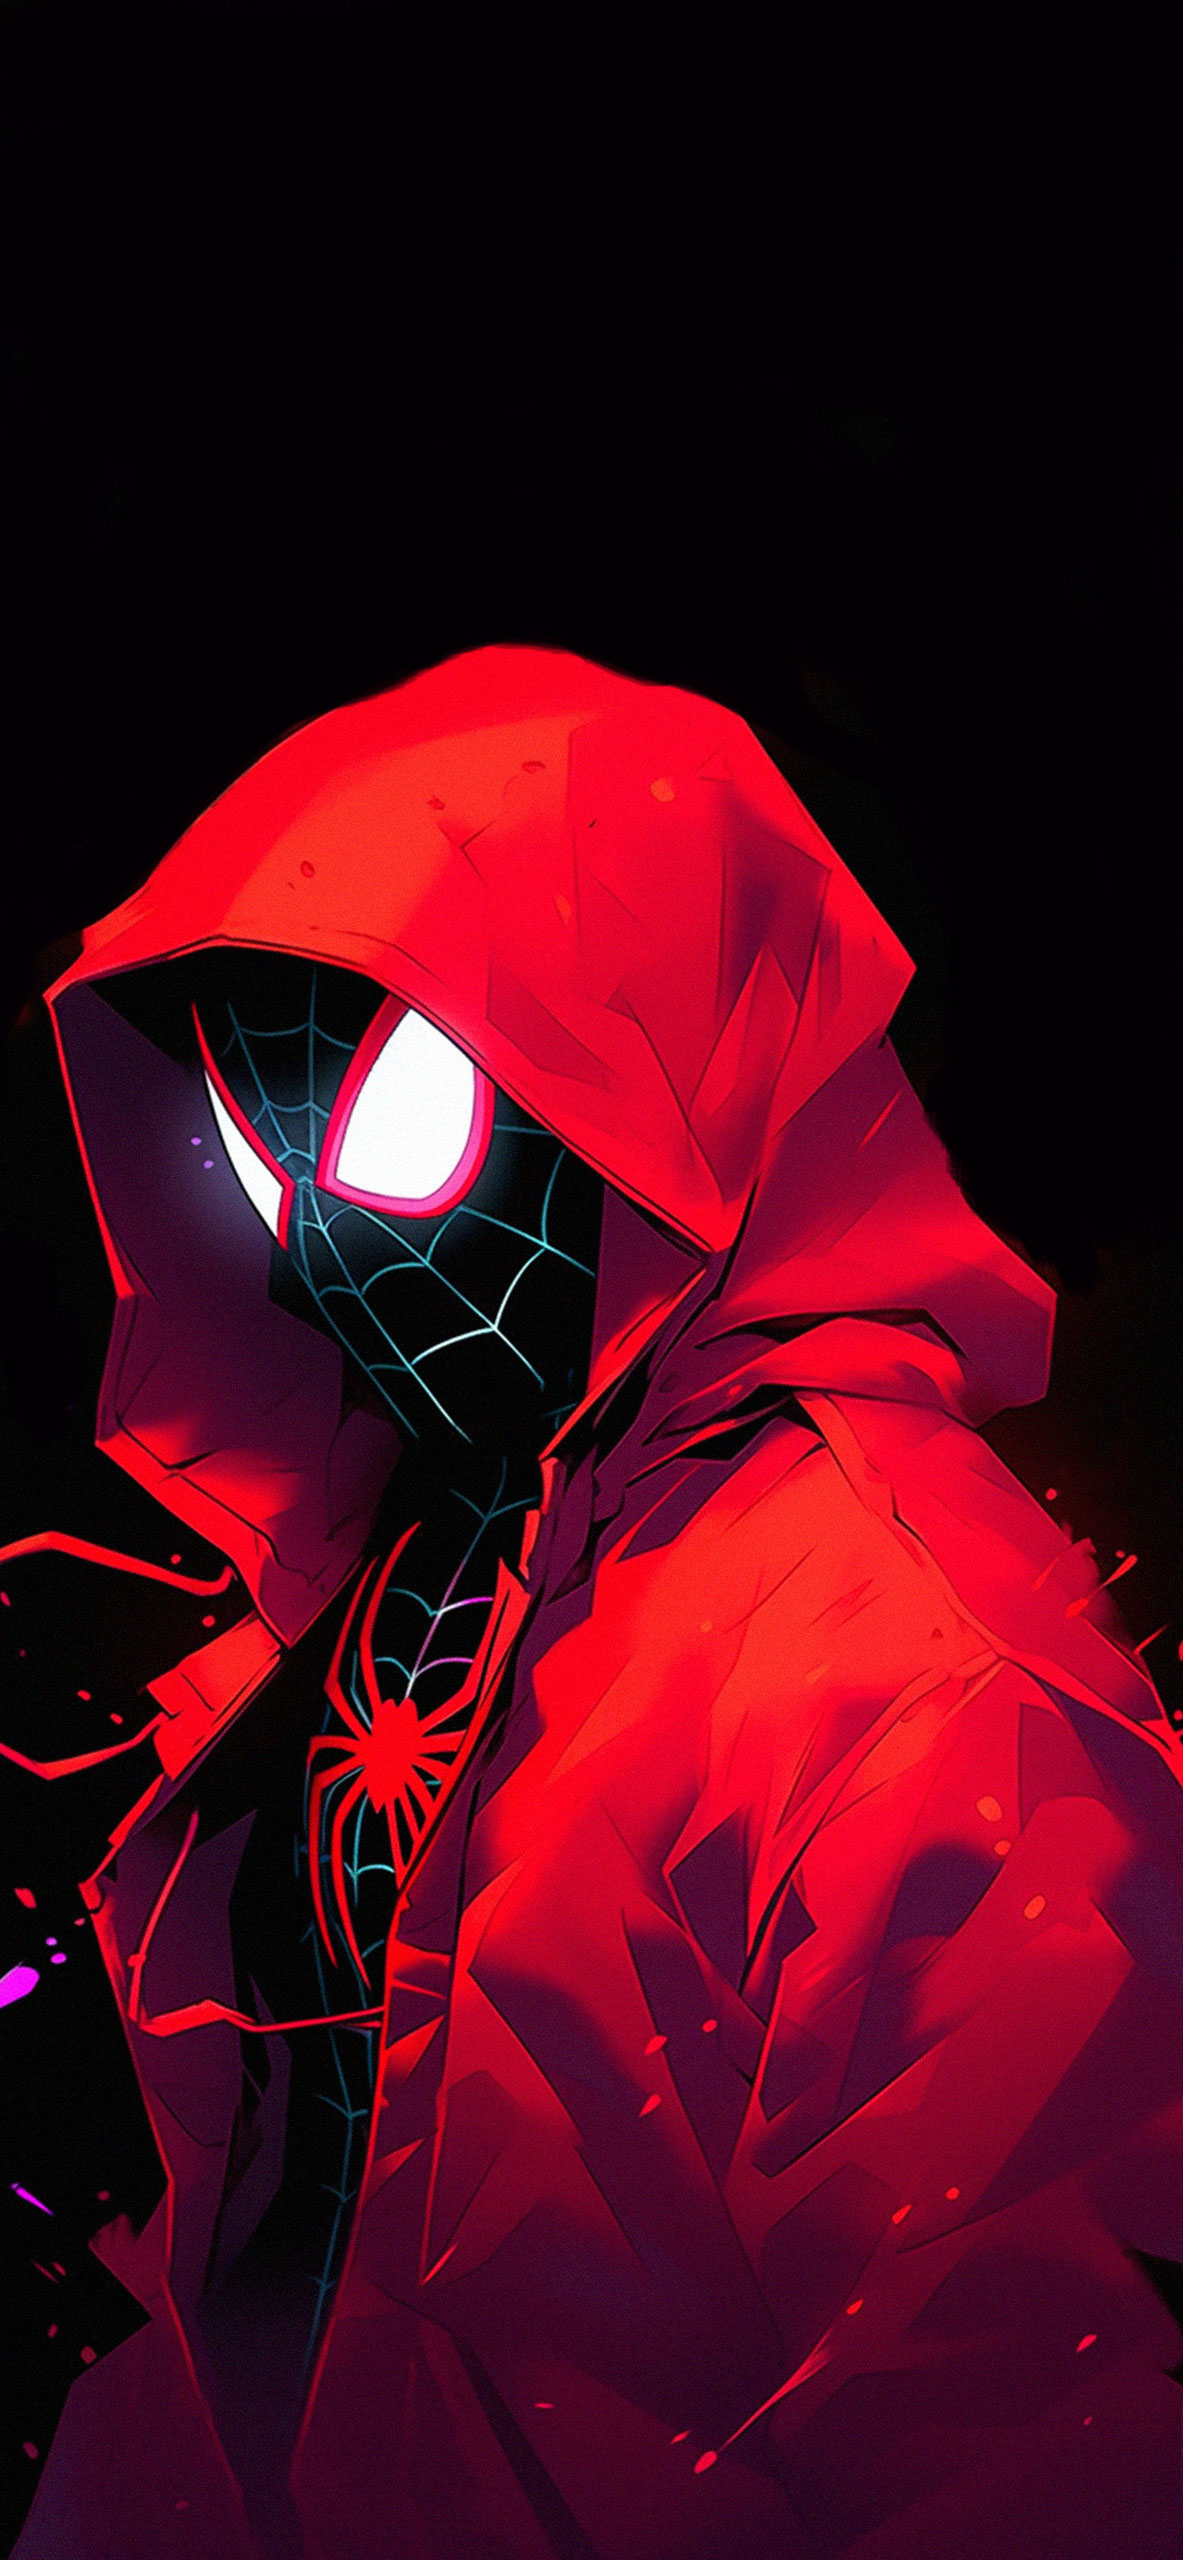 Spider Man in the hood black wallpaper Marvel amoled aesthetic